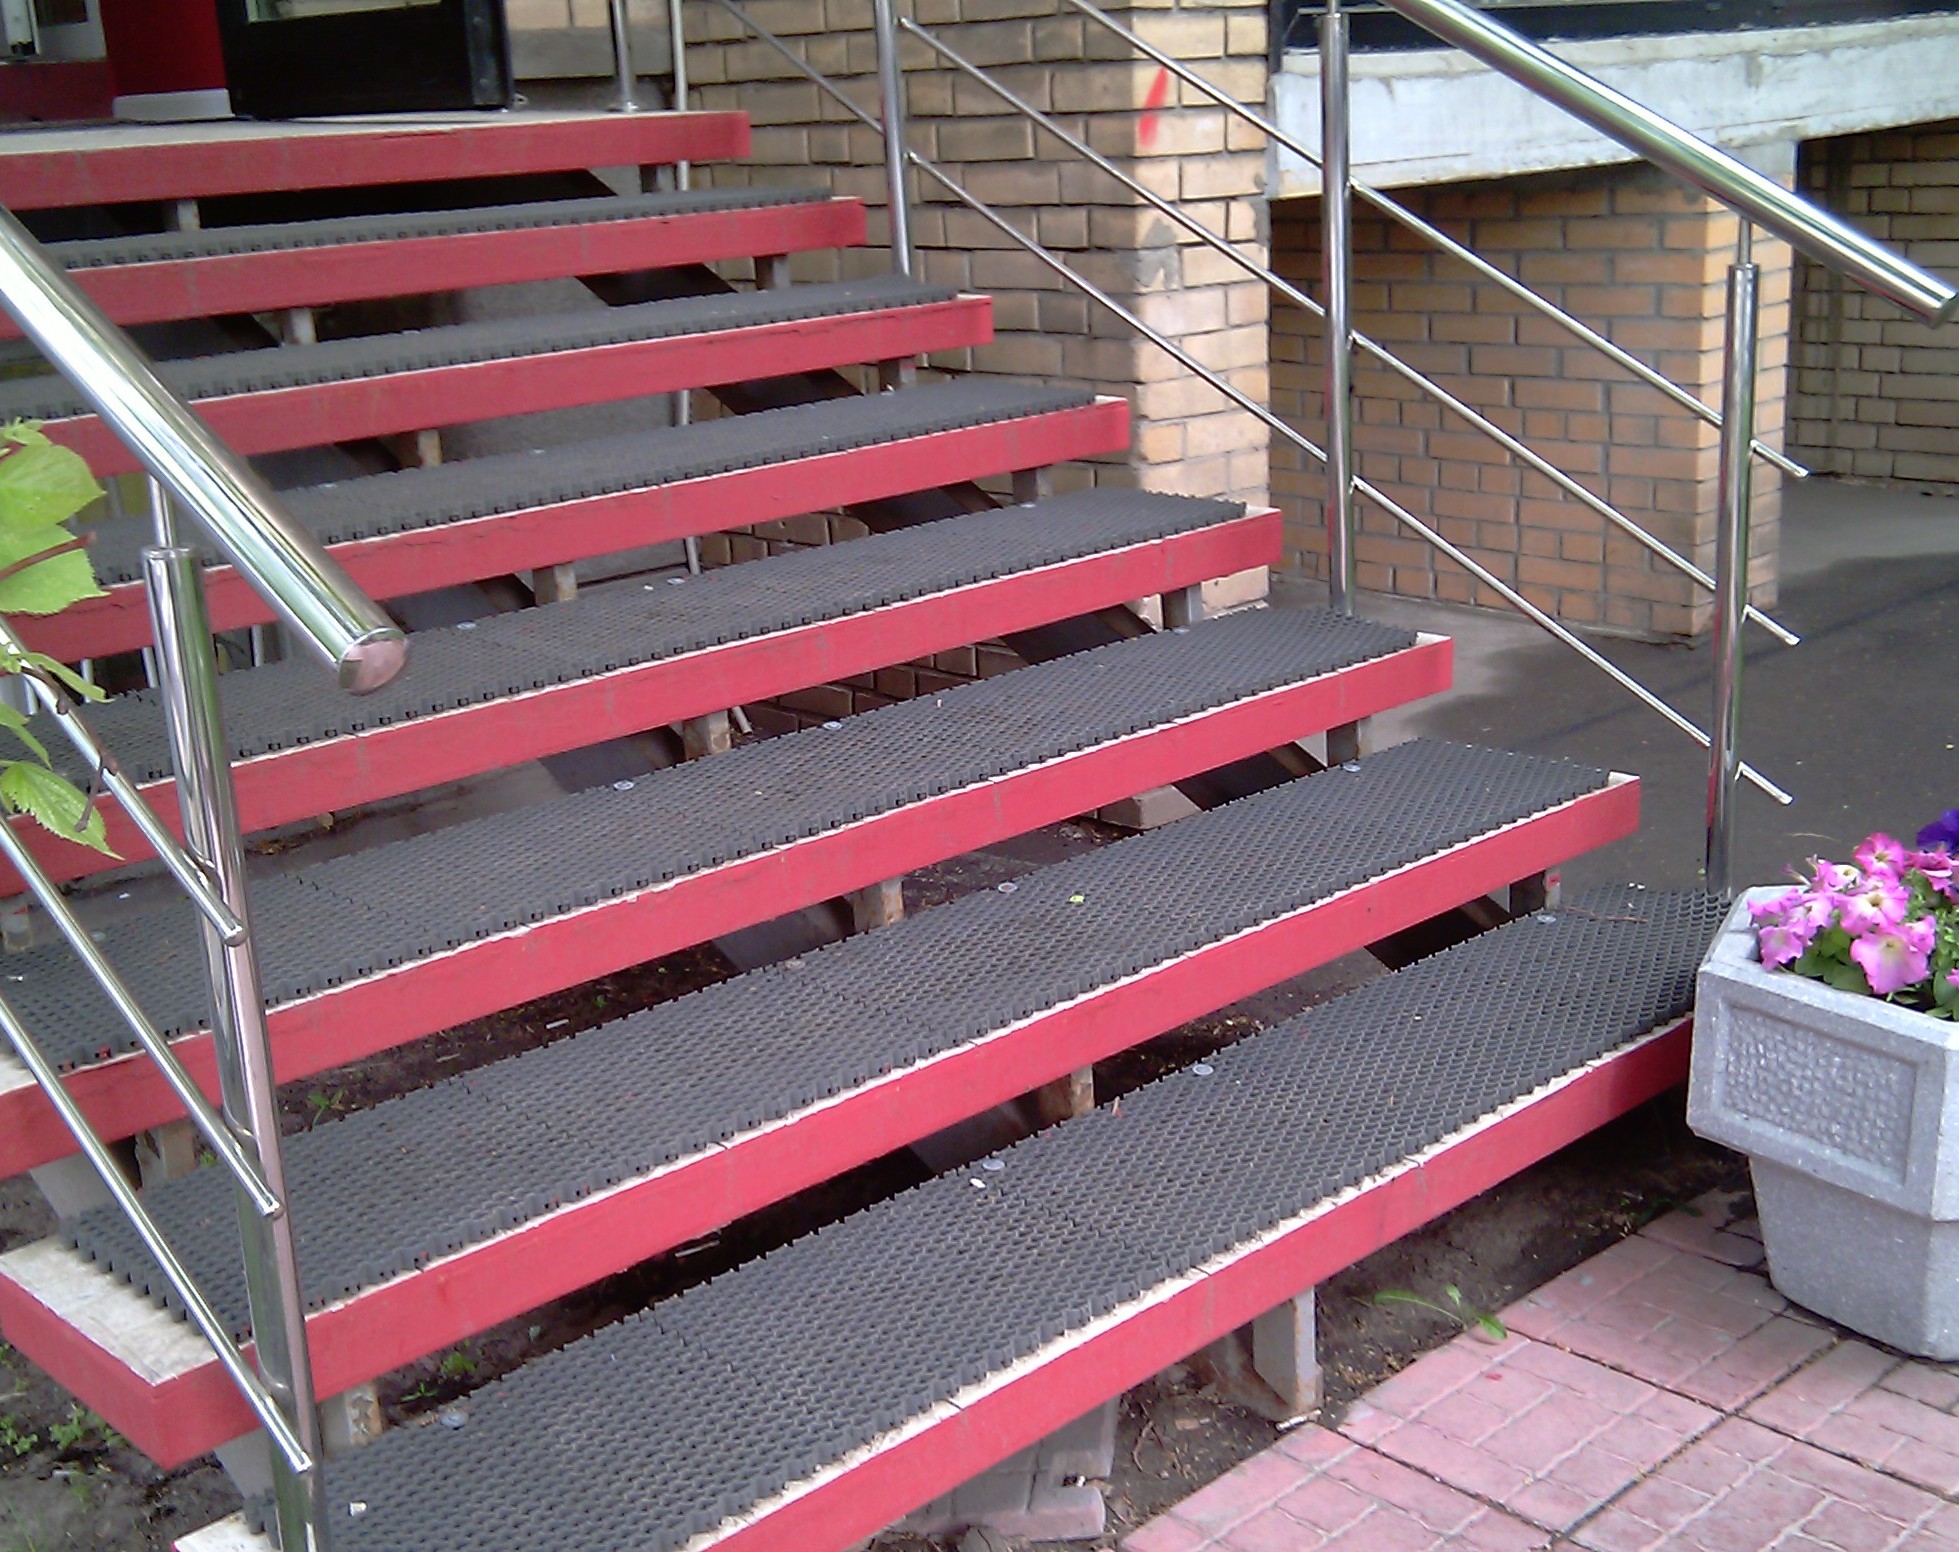 Покрытие на ступеньки. Противоскользящие накладки на ступени деревянной лестницы на улице. Резиновые накладки на ступени противоскользящие. Резиновая плитка NEWMIX противоскользящая ступень. Накладки противоскольжения на ступени для лестницы.